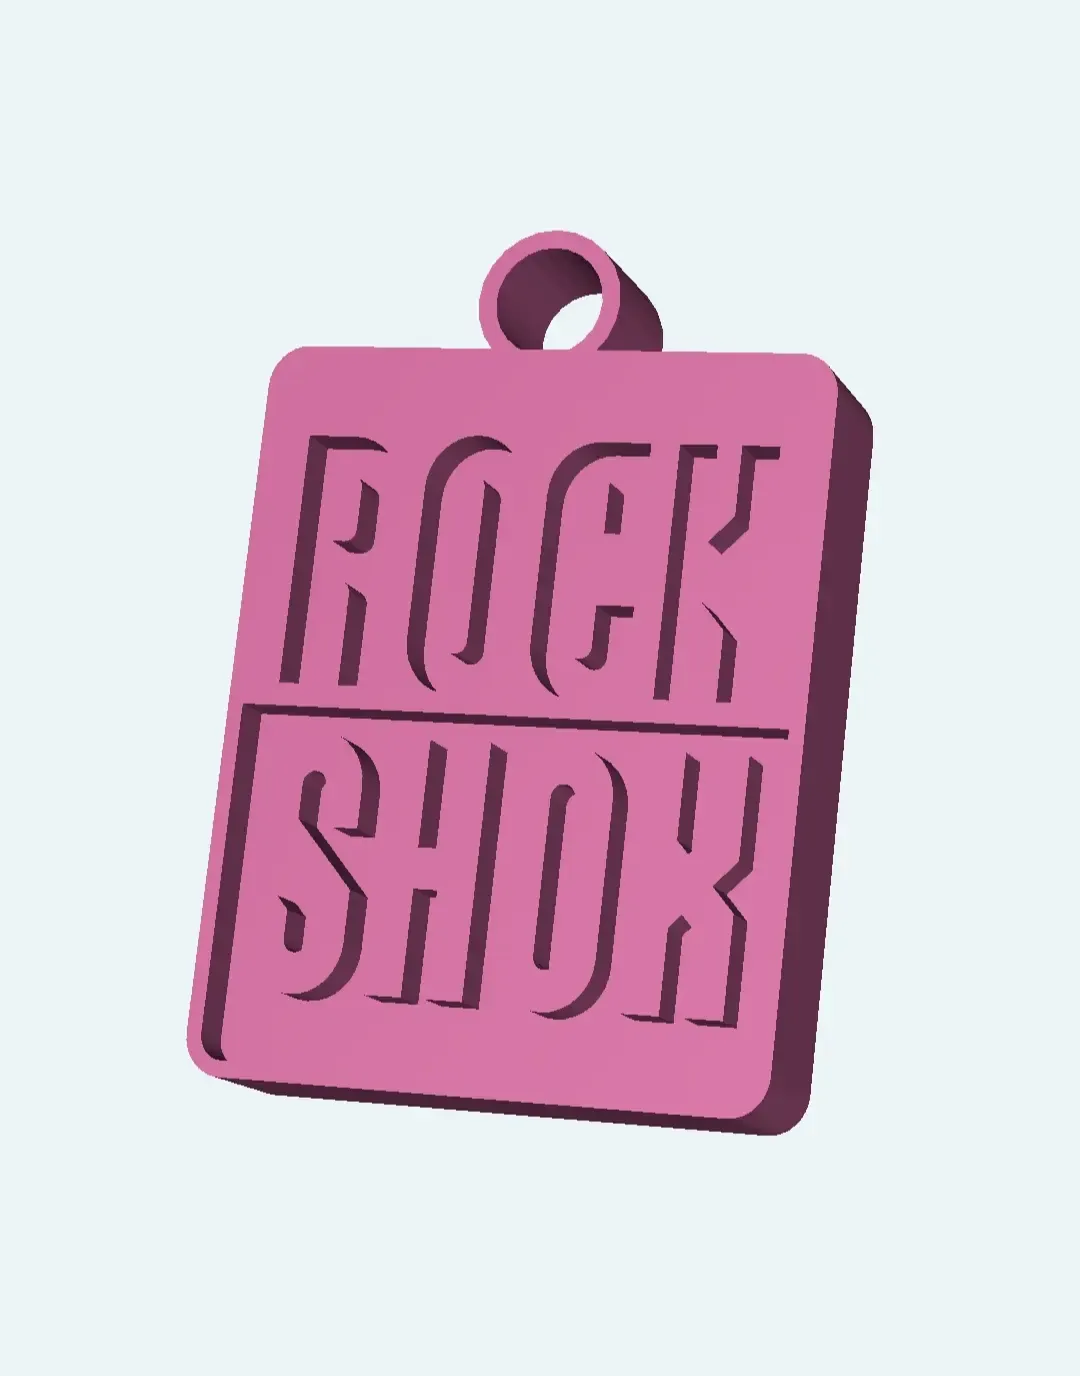 Rock Shox keychain logo 